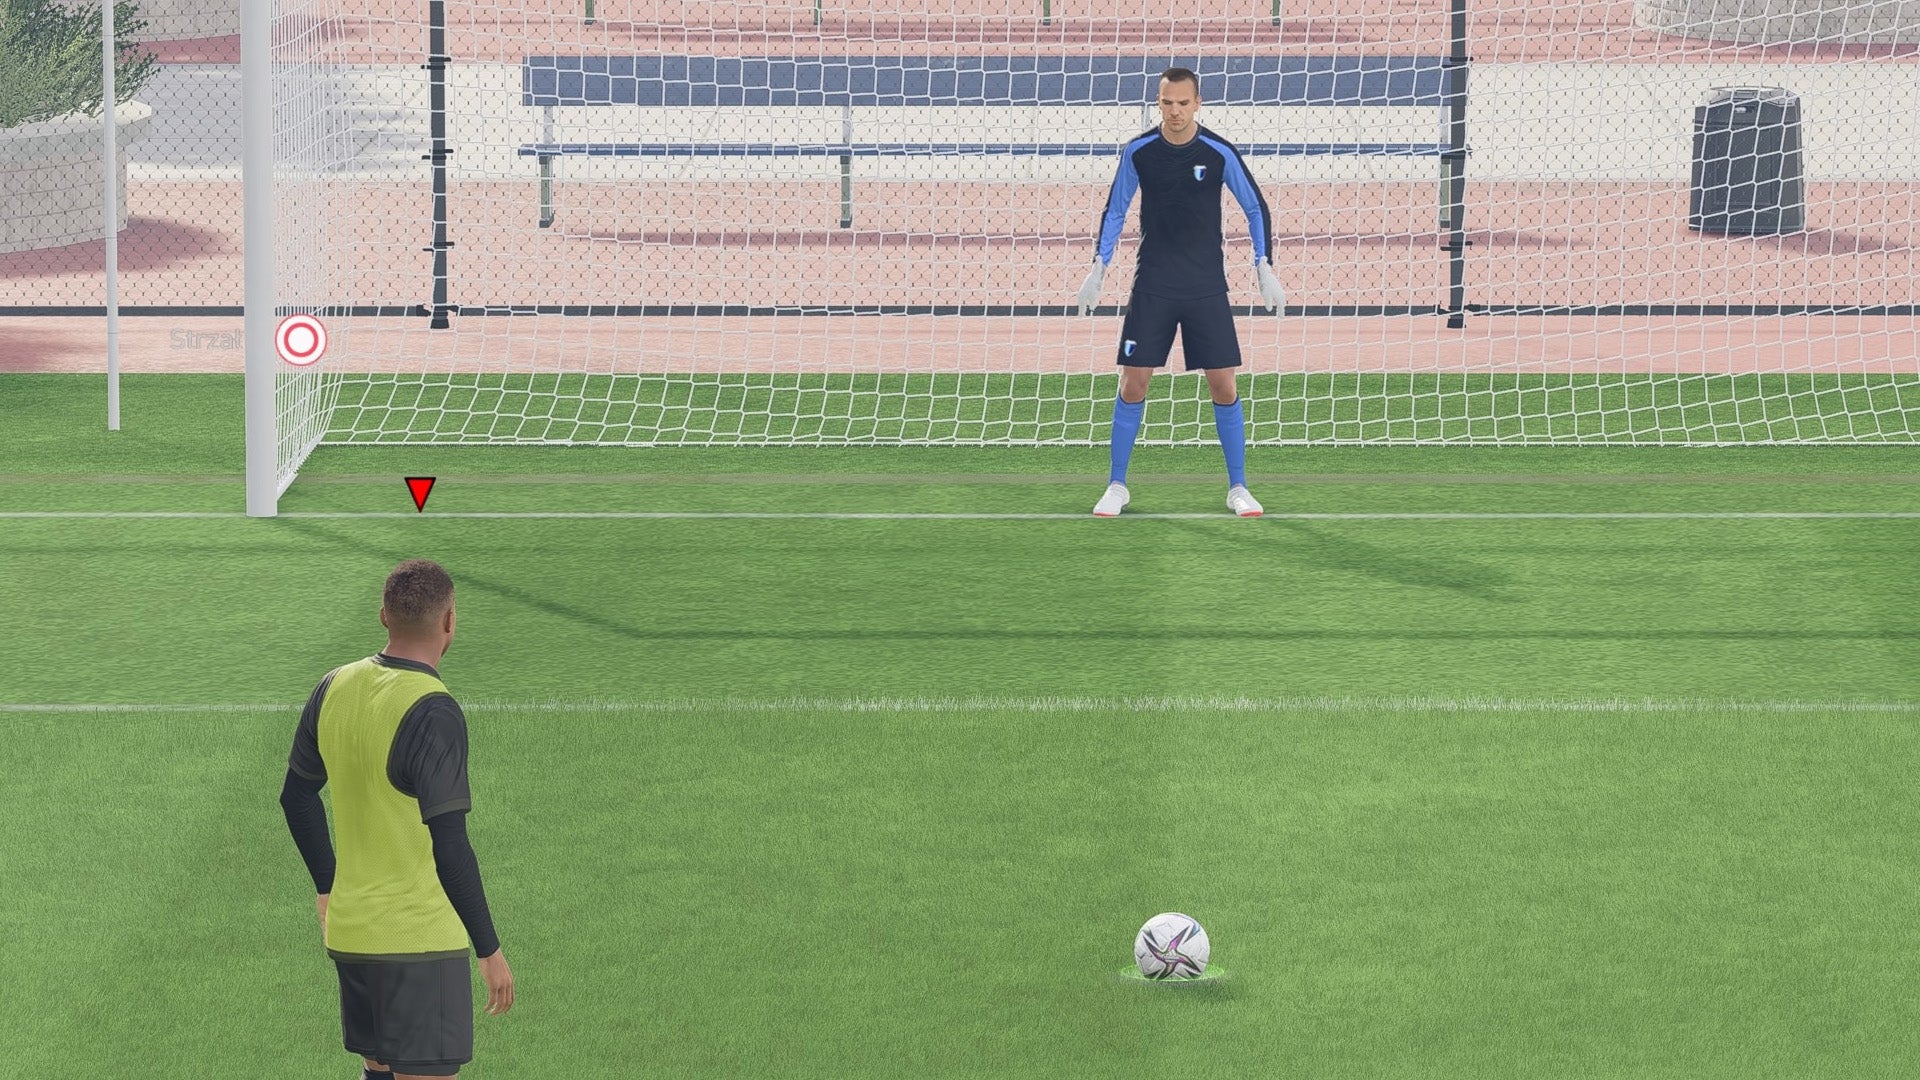 Obrazki dla FIFA 23 - rzut karny: jak strzelić gola